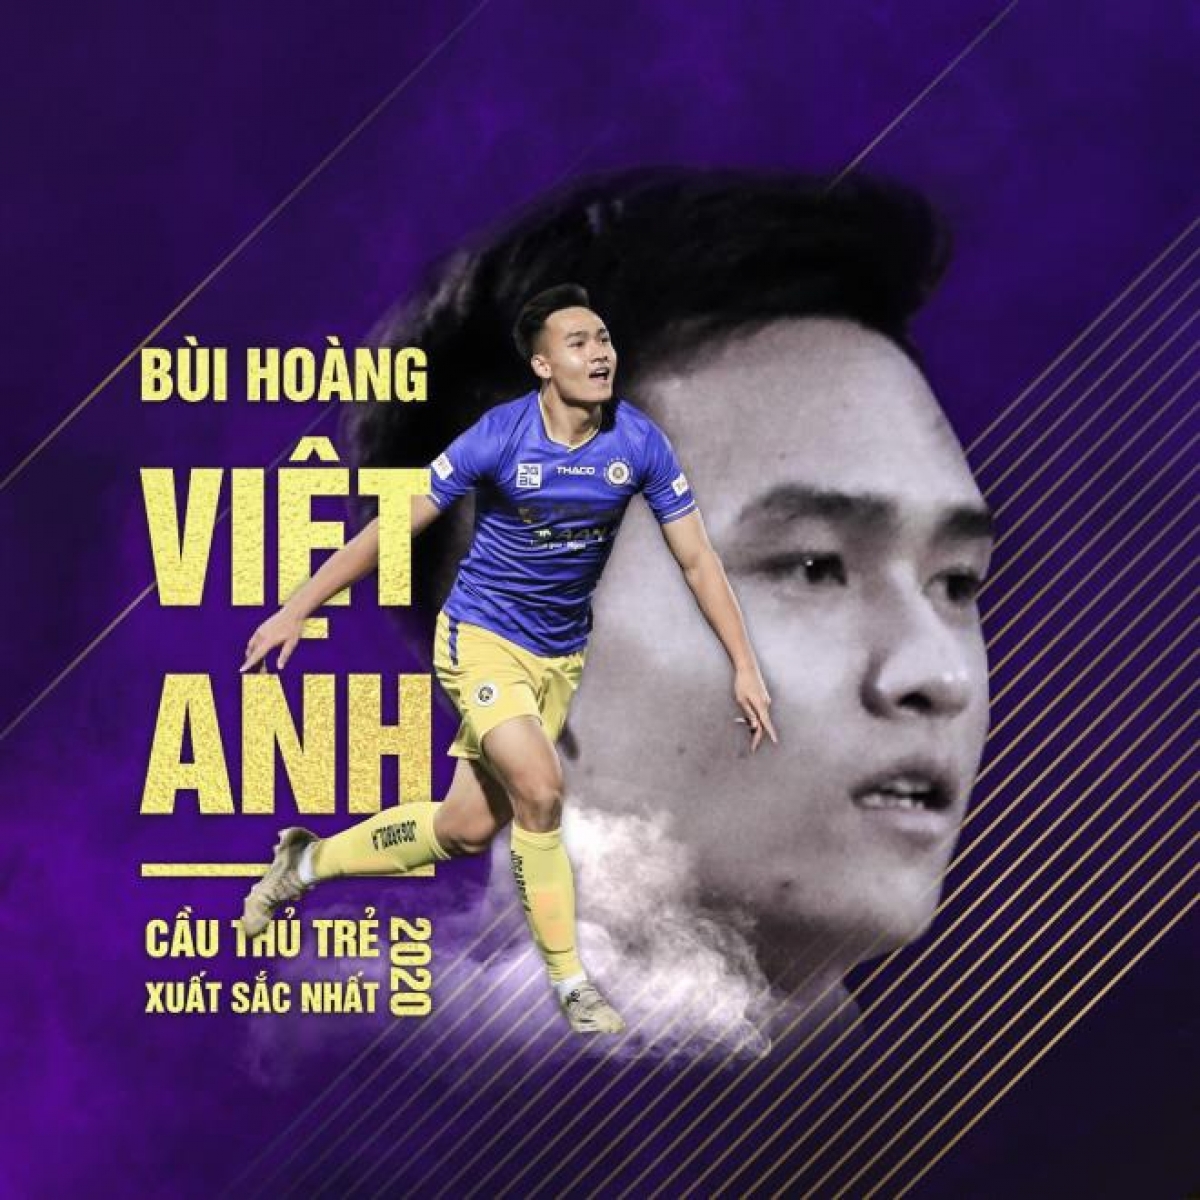 Cầu thủ trẻ nam xuất sắc nhất năm thuộc về Bùi Hoàng Việt Anh